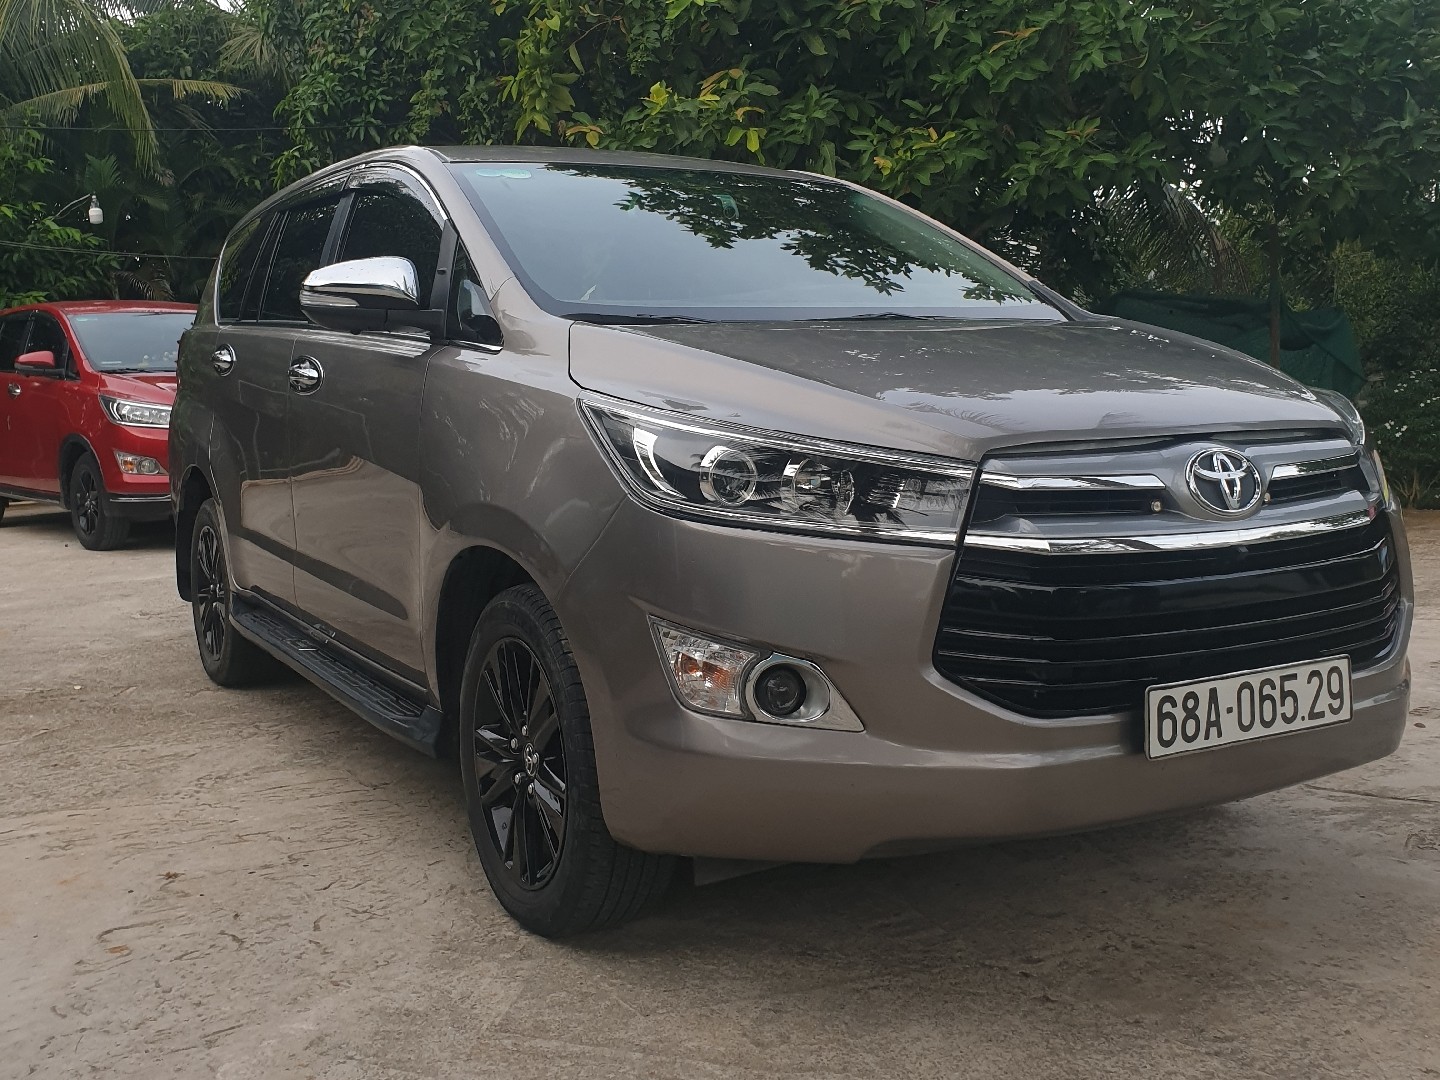 SigoVN - Cho thuê xe tự lái Phú Quốc - Toyota Innova